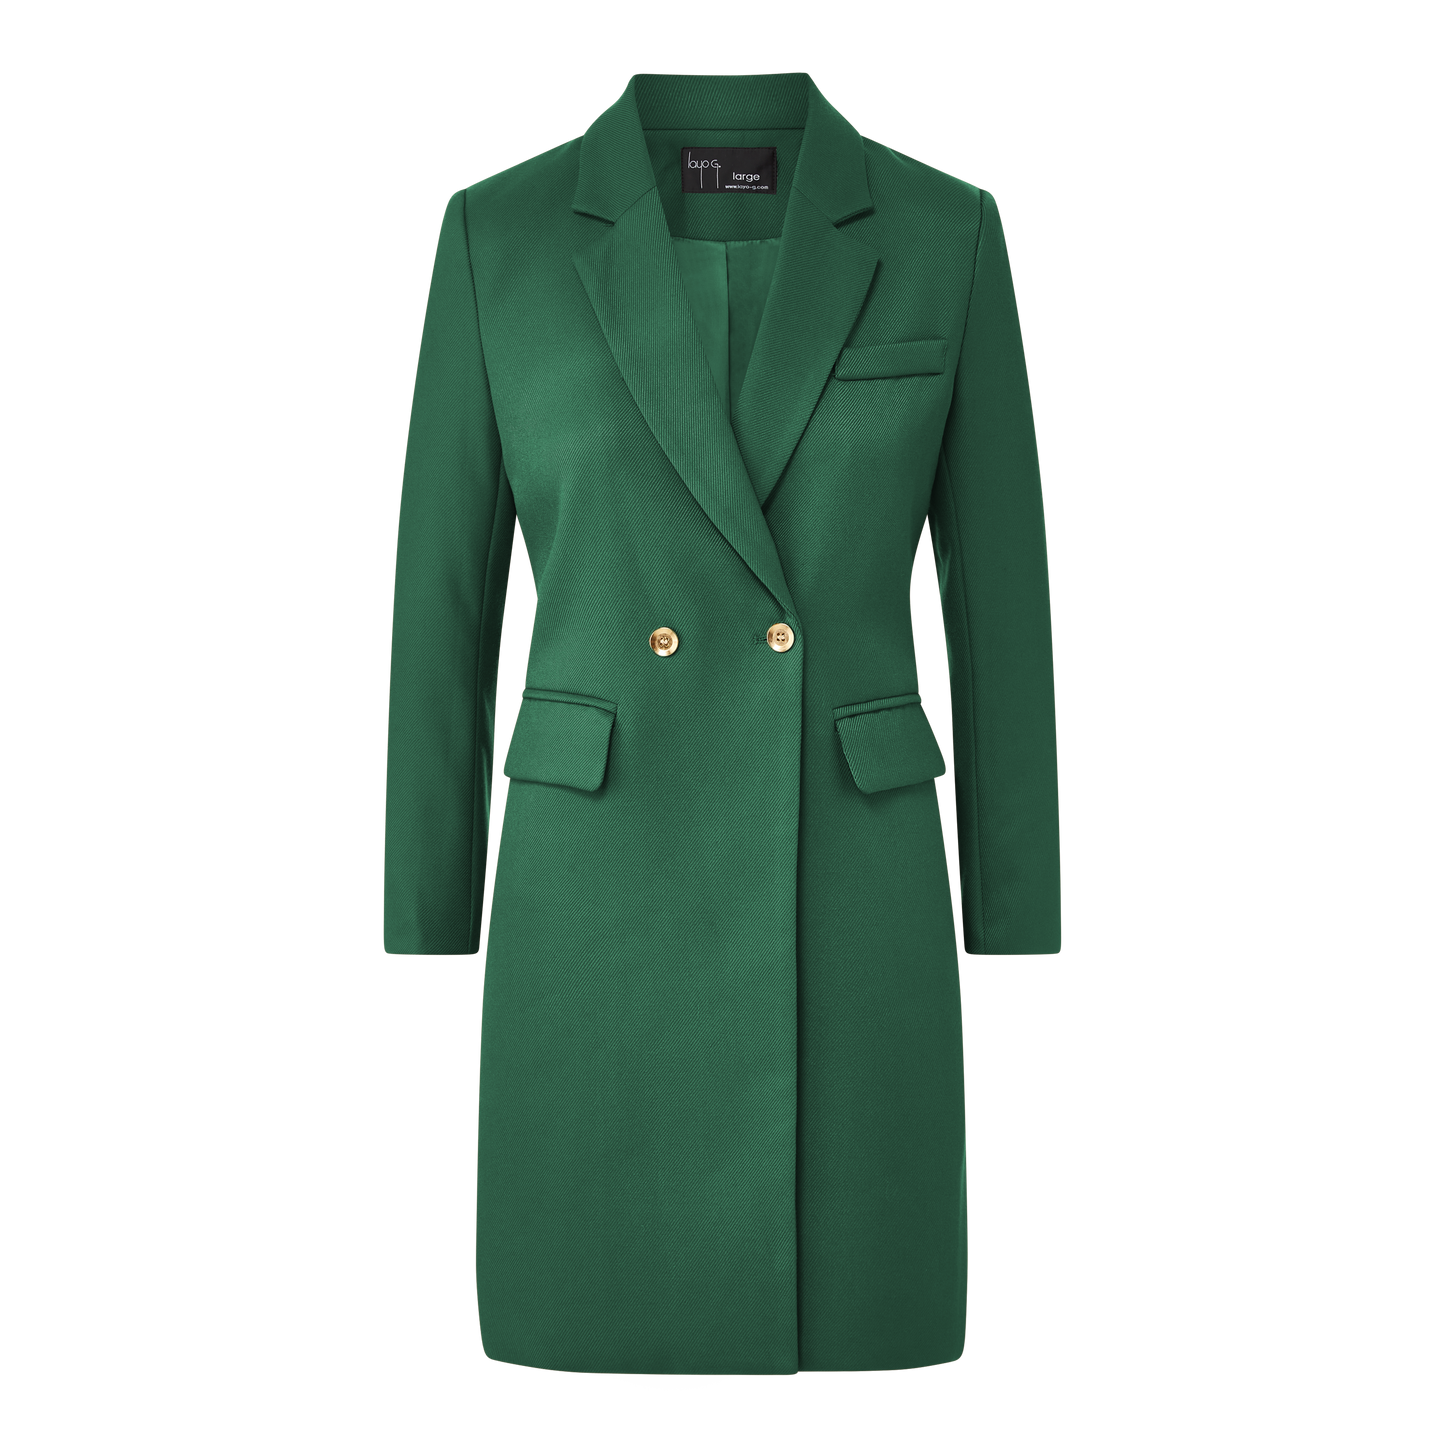 Deal Closer Outer Coat - Emerald Green